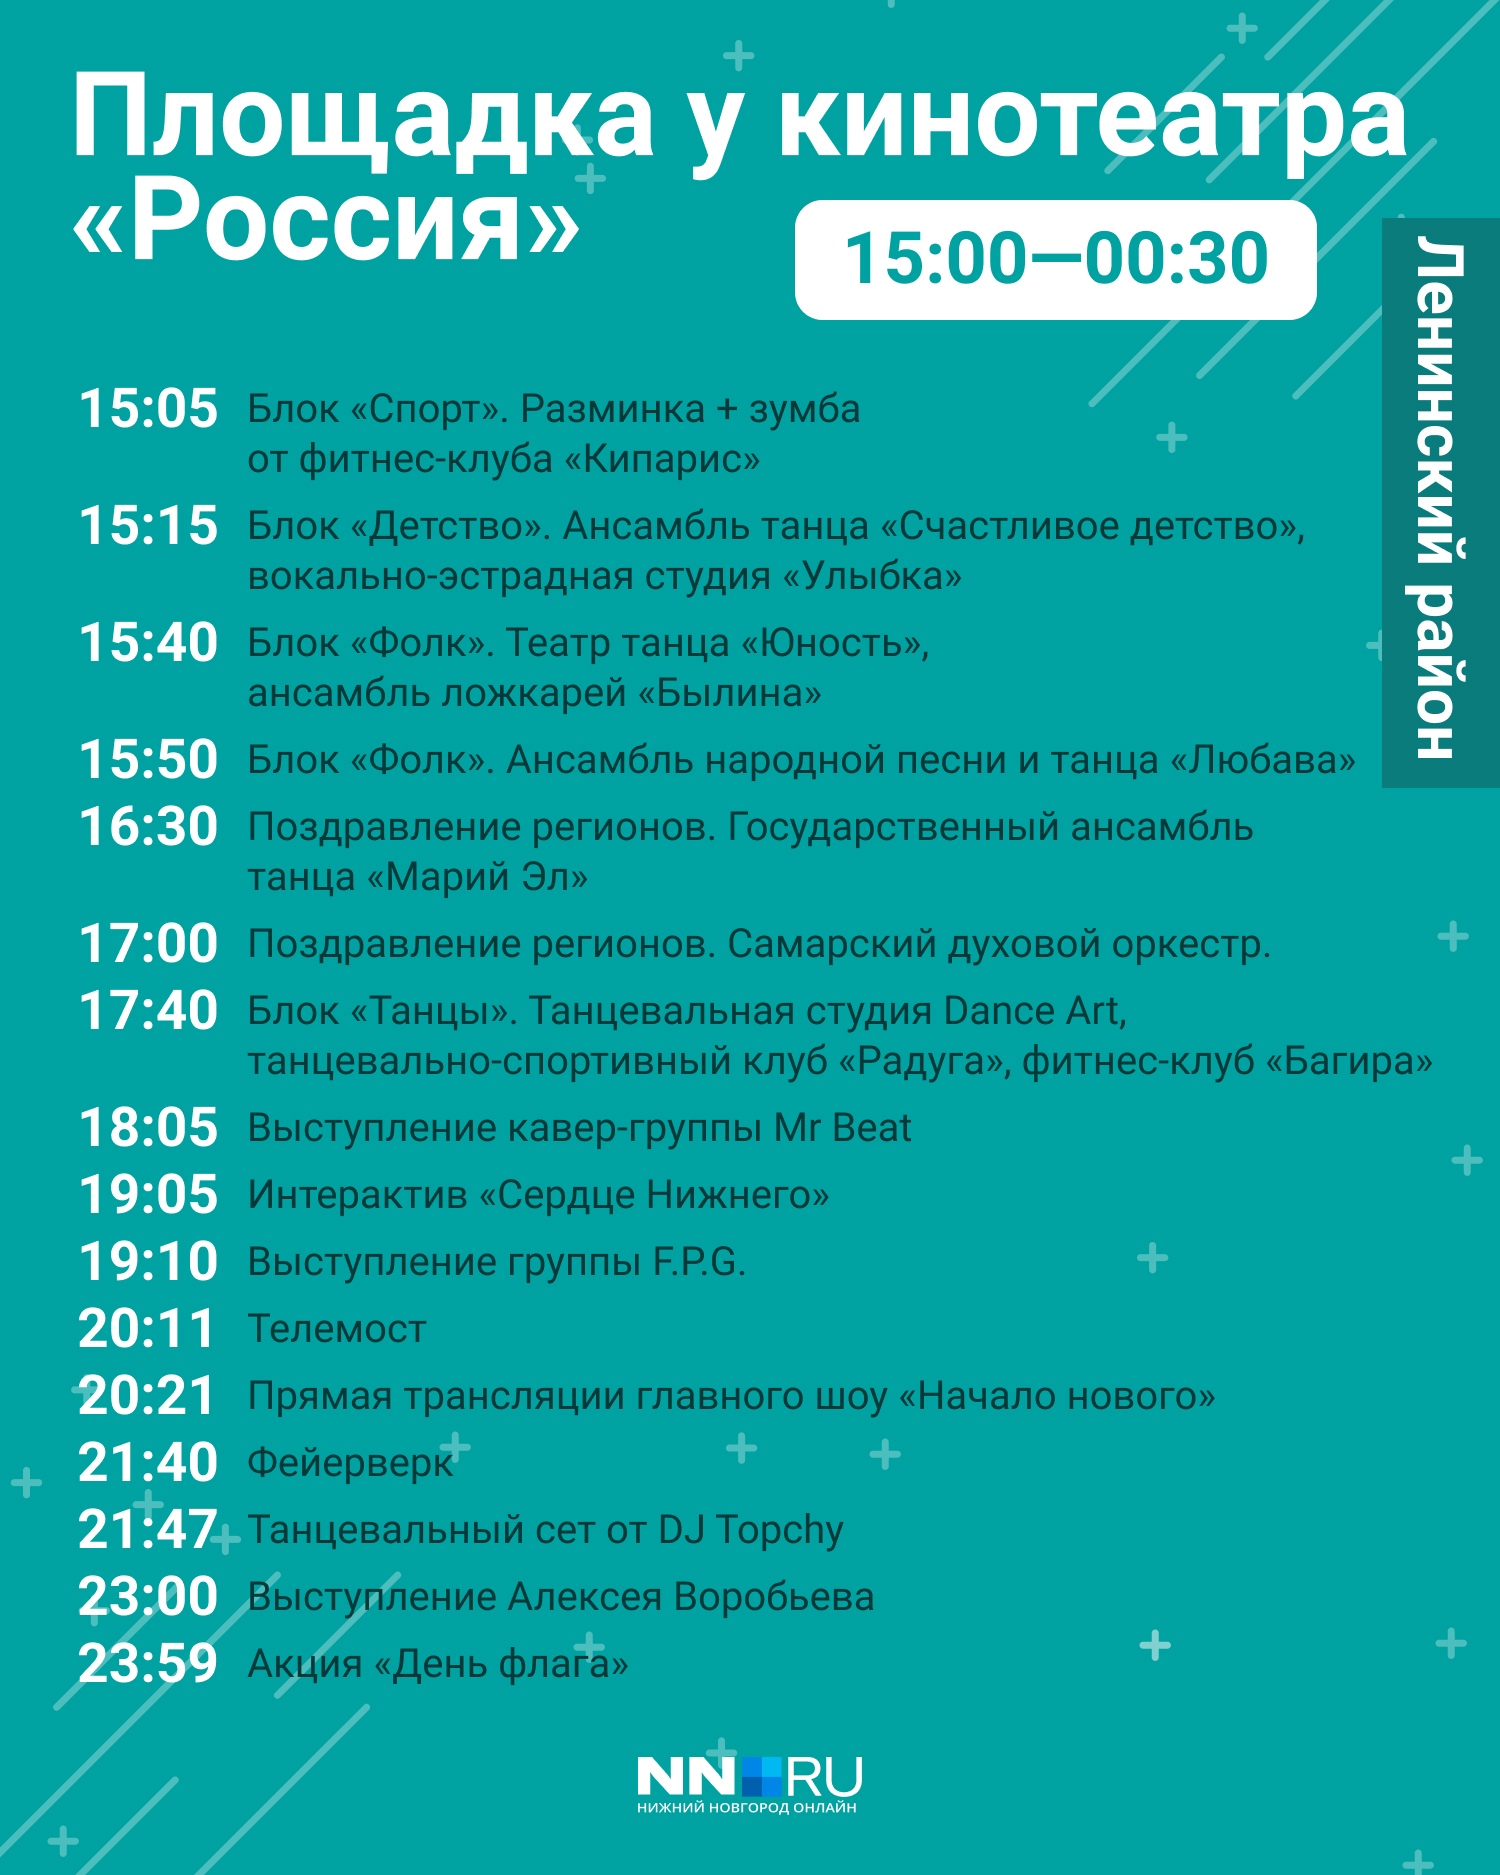 Программа мероприятий в Ленинском районе